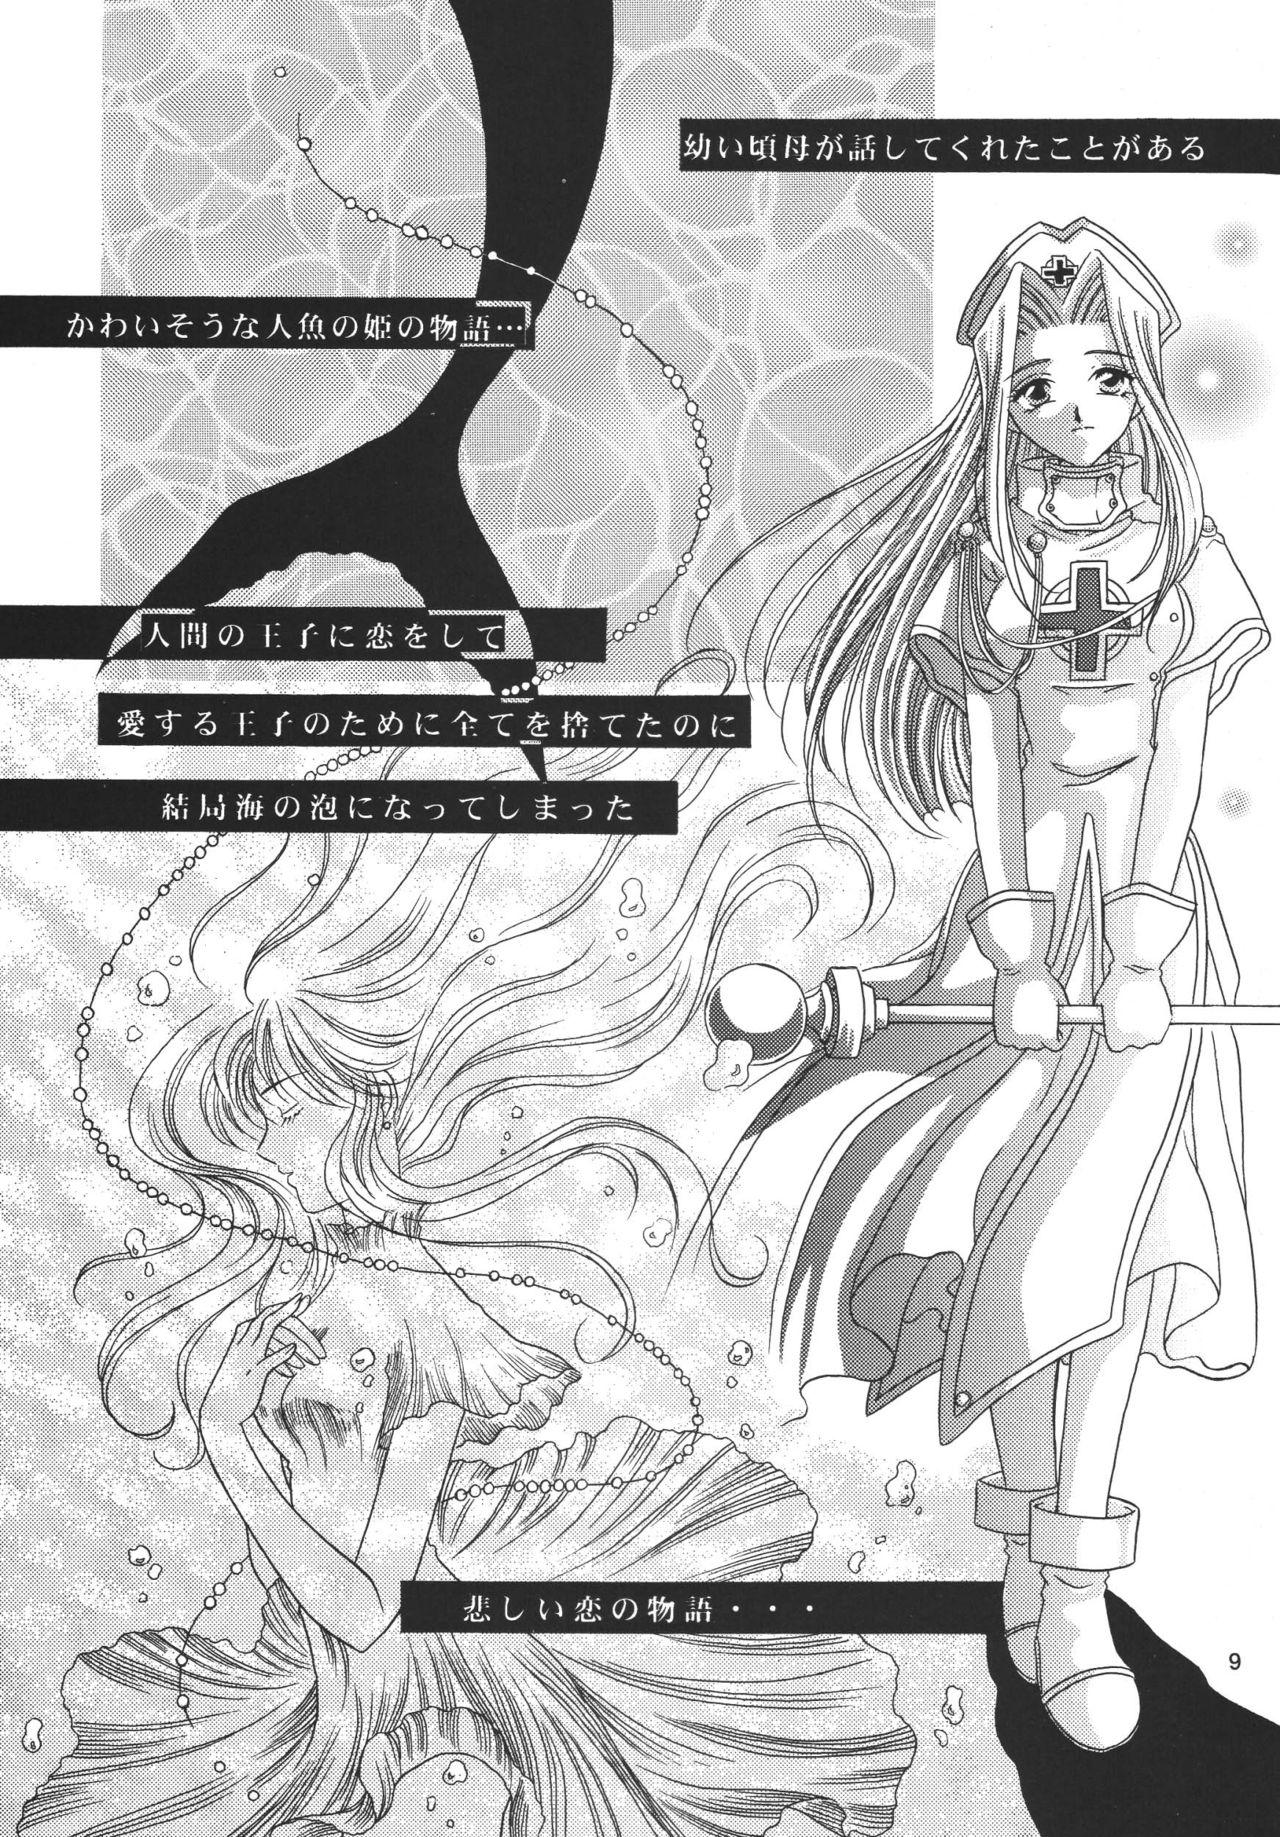 Penis Snowdrop no Hanakotoba - Tales of phantasia Cdzinha - Page 9